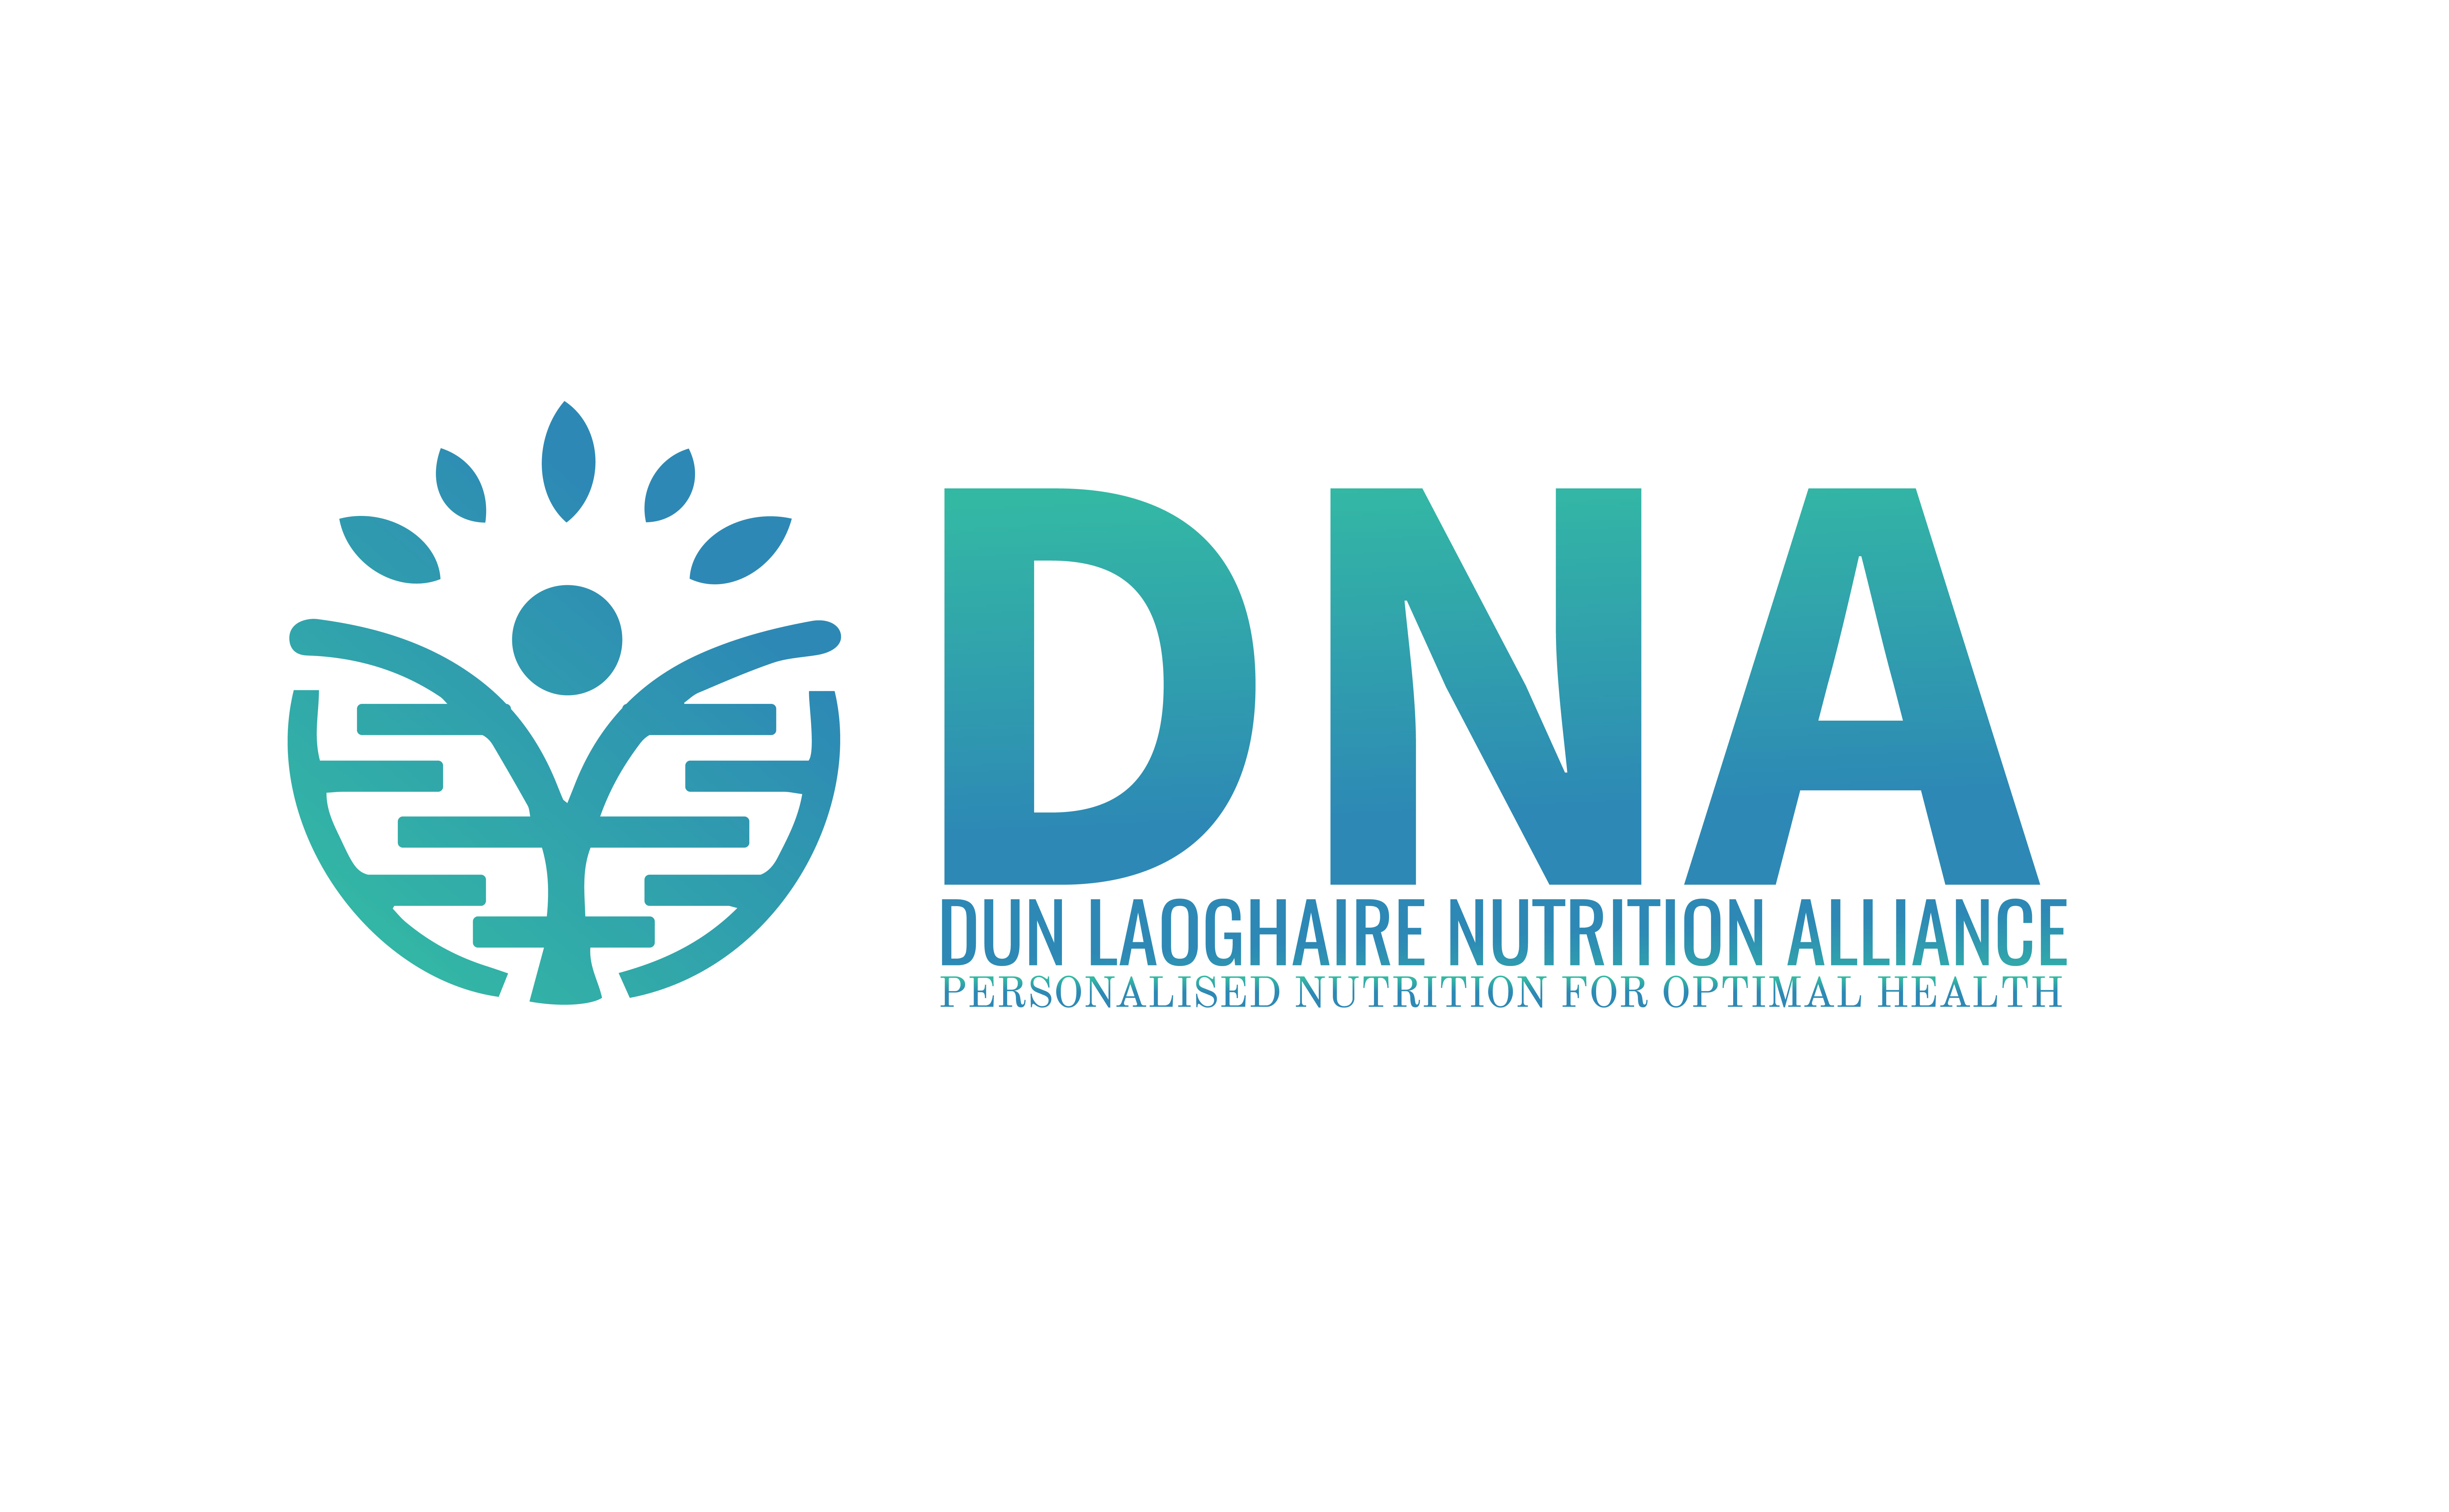 Dun Laoghaire Nutrition Alliance